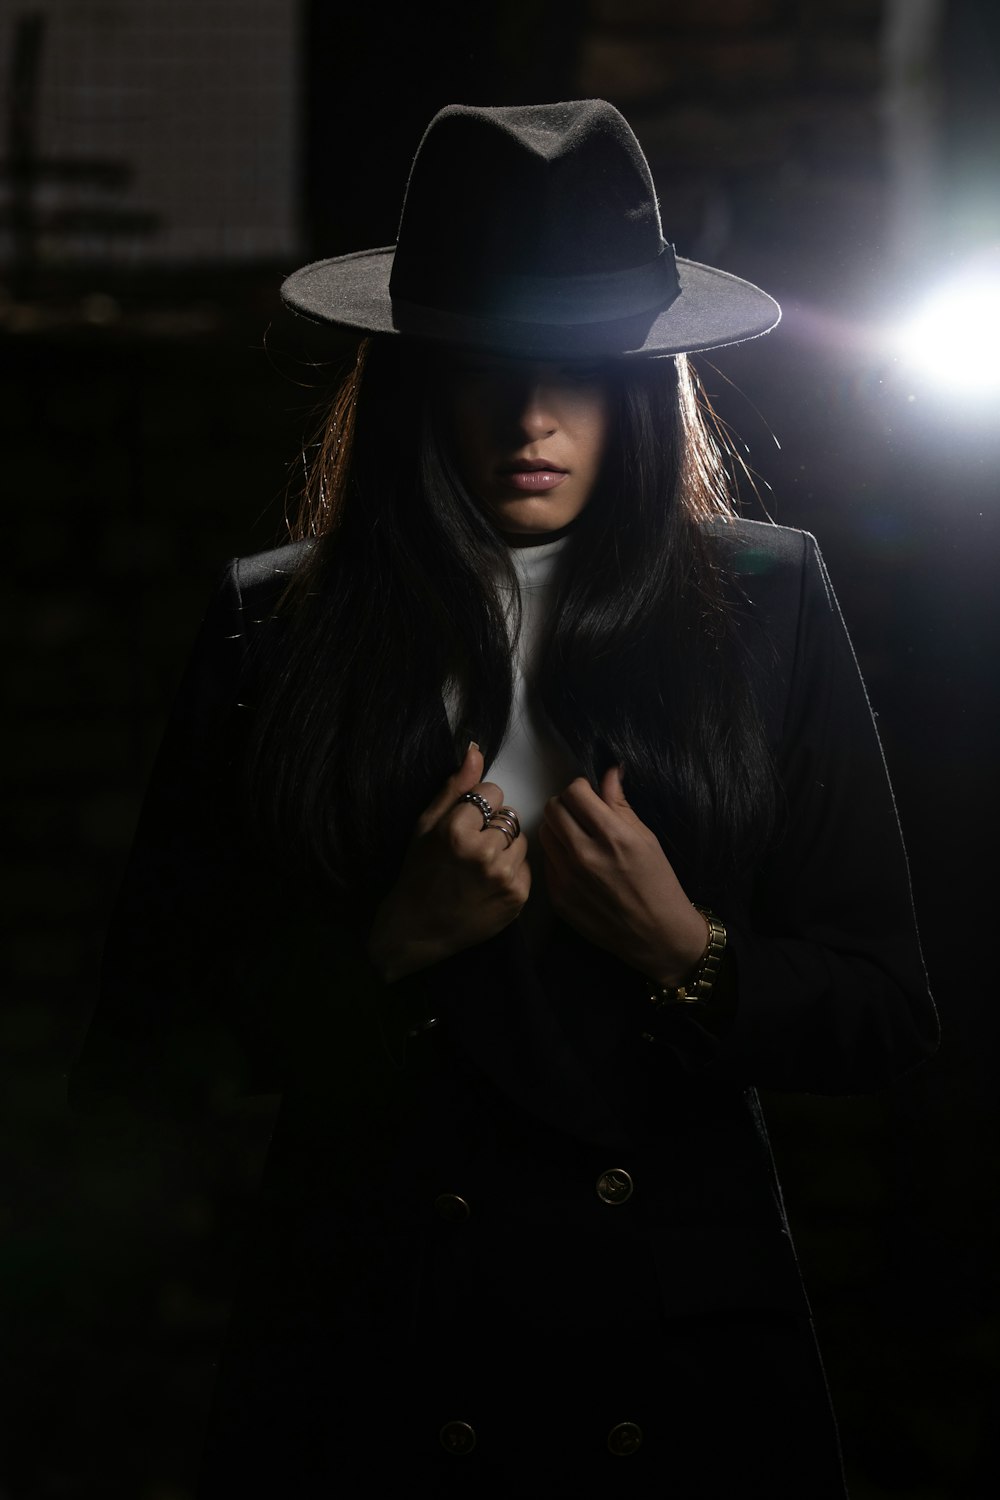 woman in black coat wearing black hat